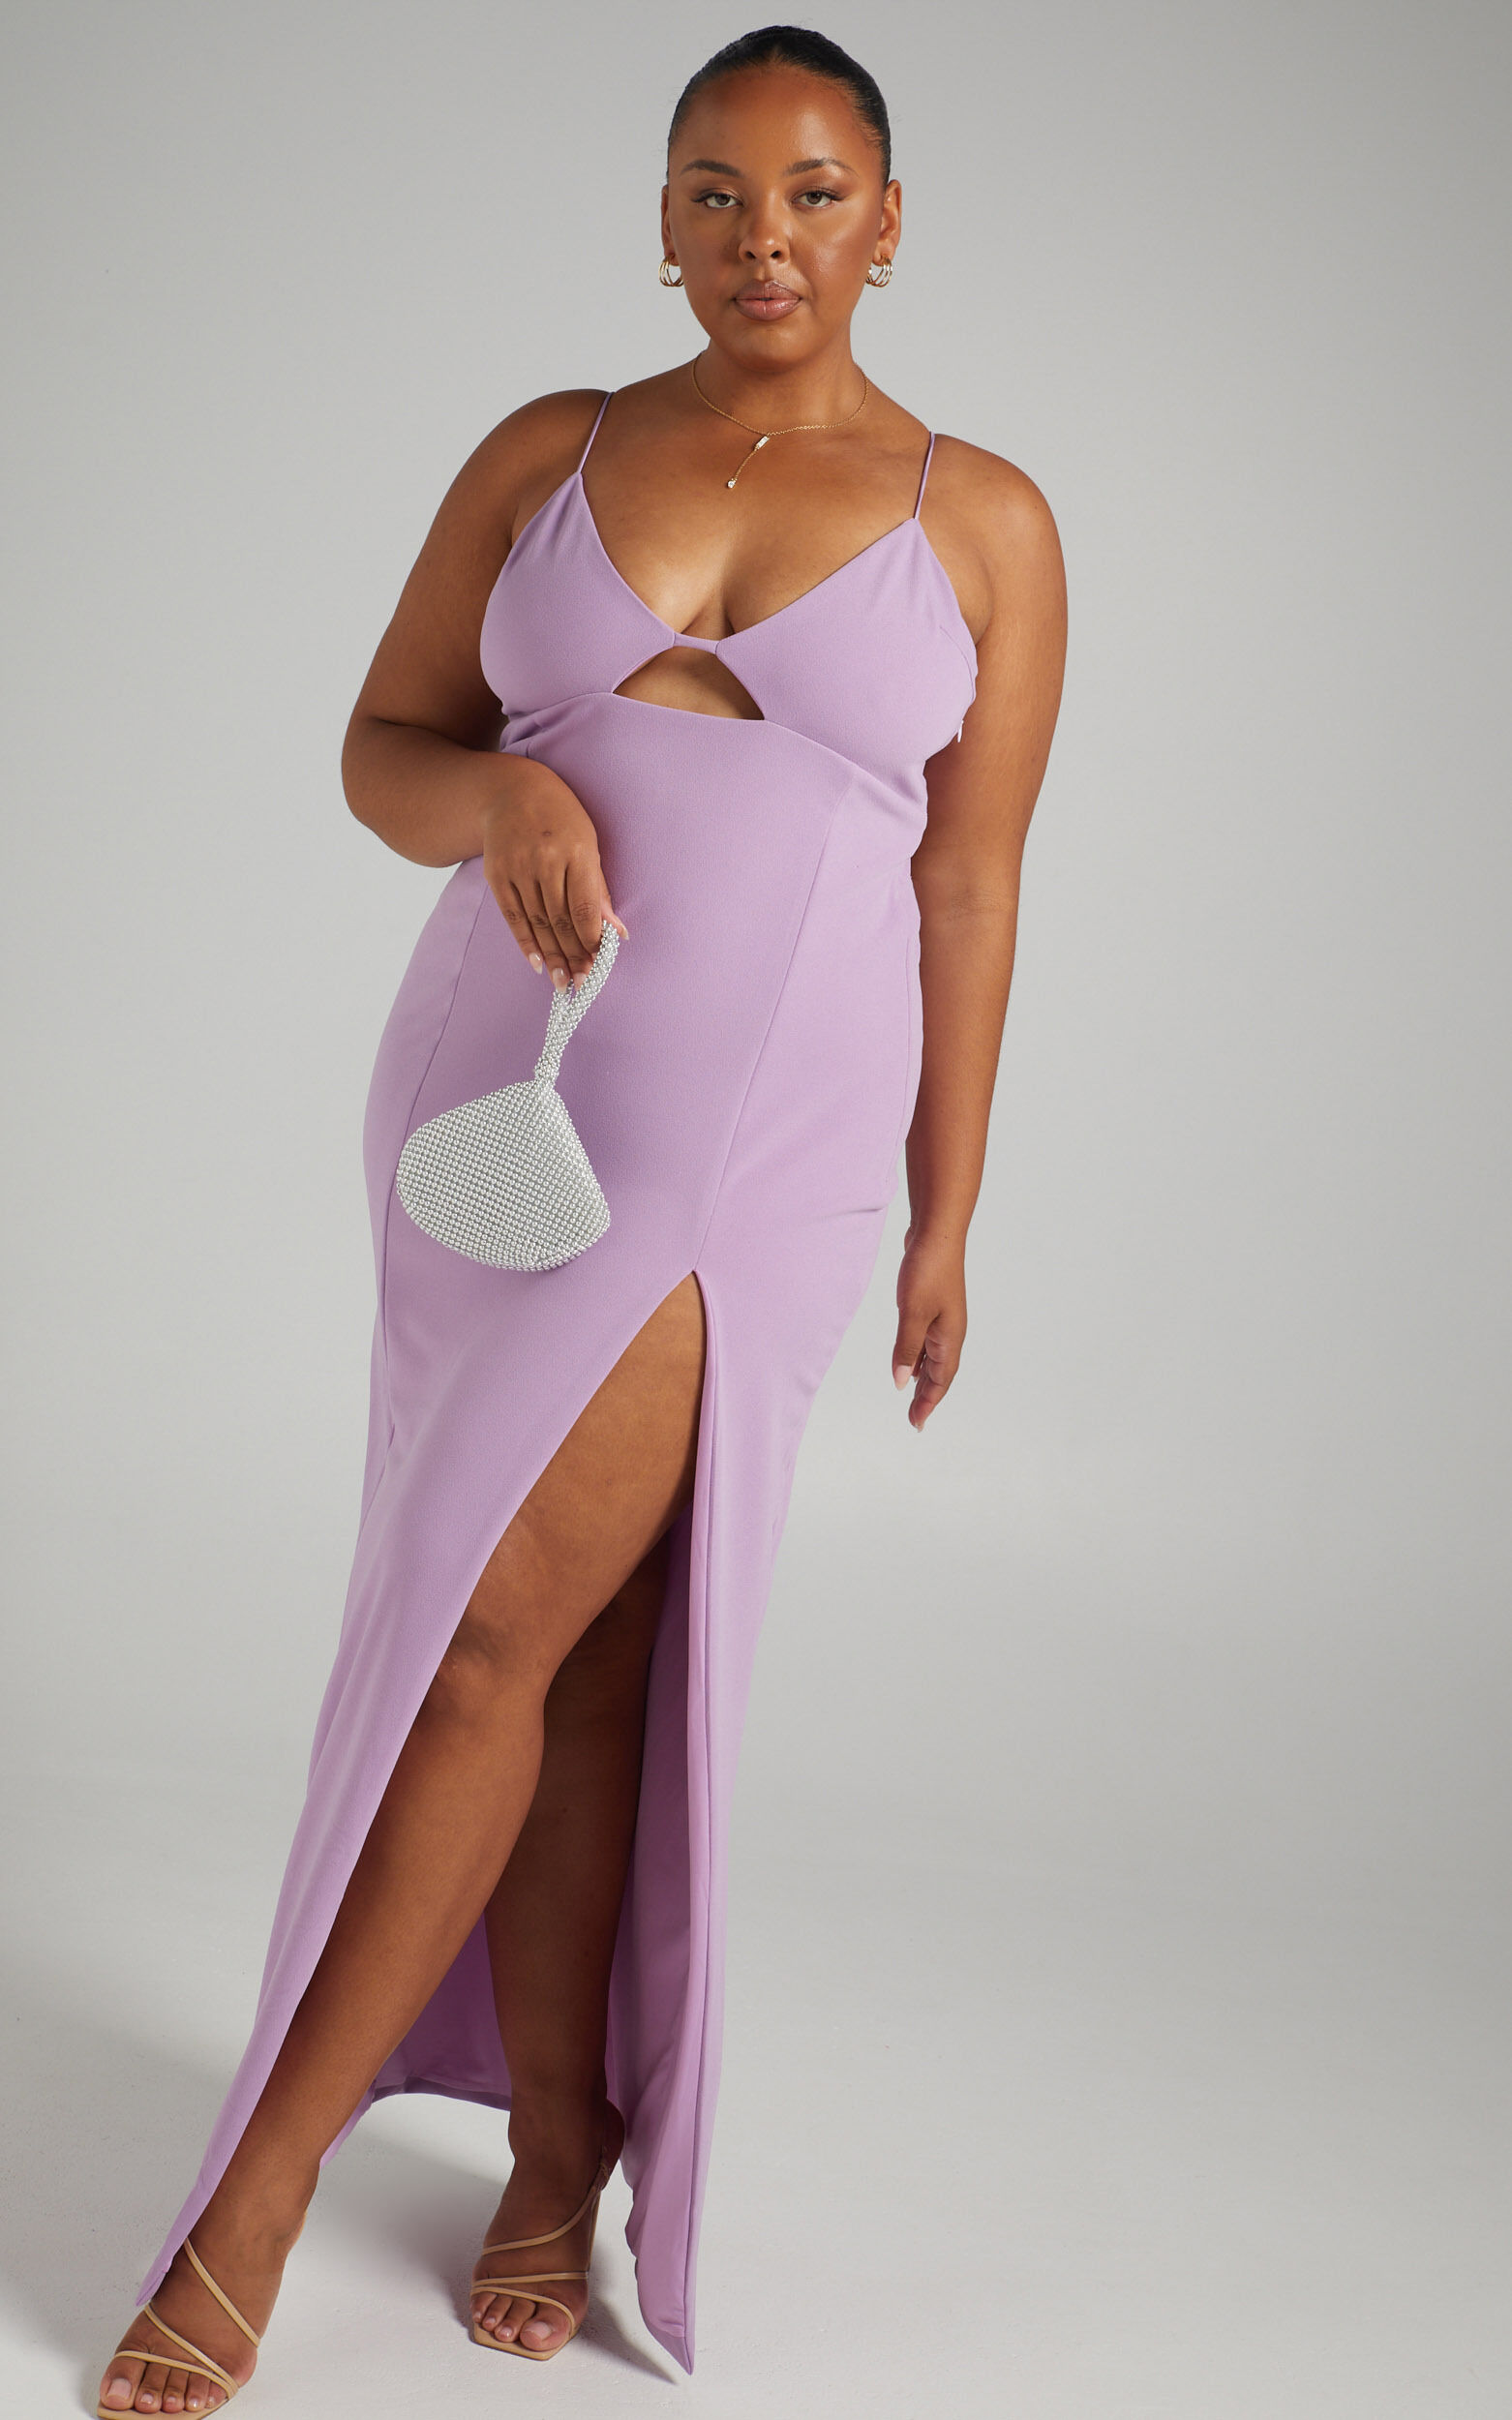 Purple Dresses | Lilac, Lavender ...